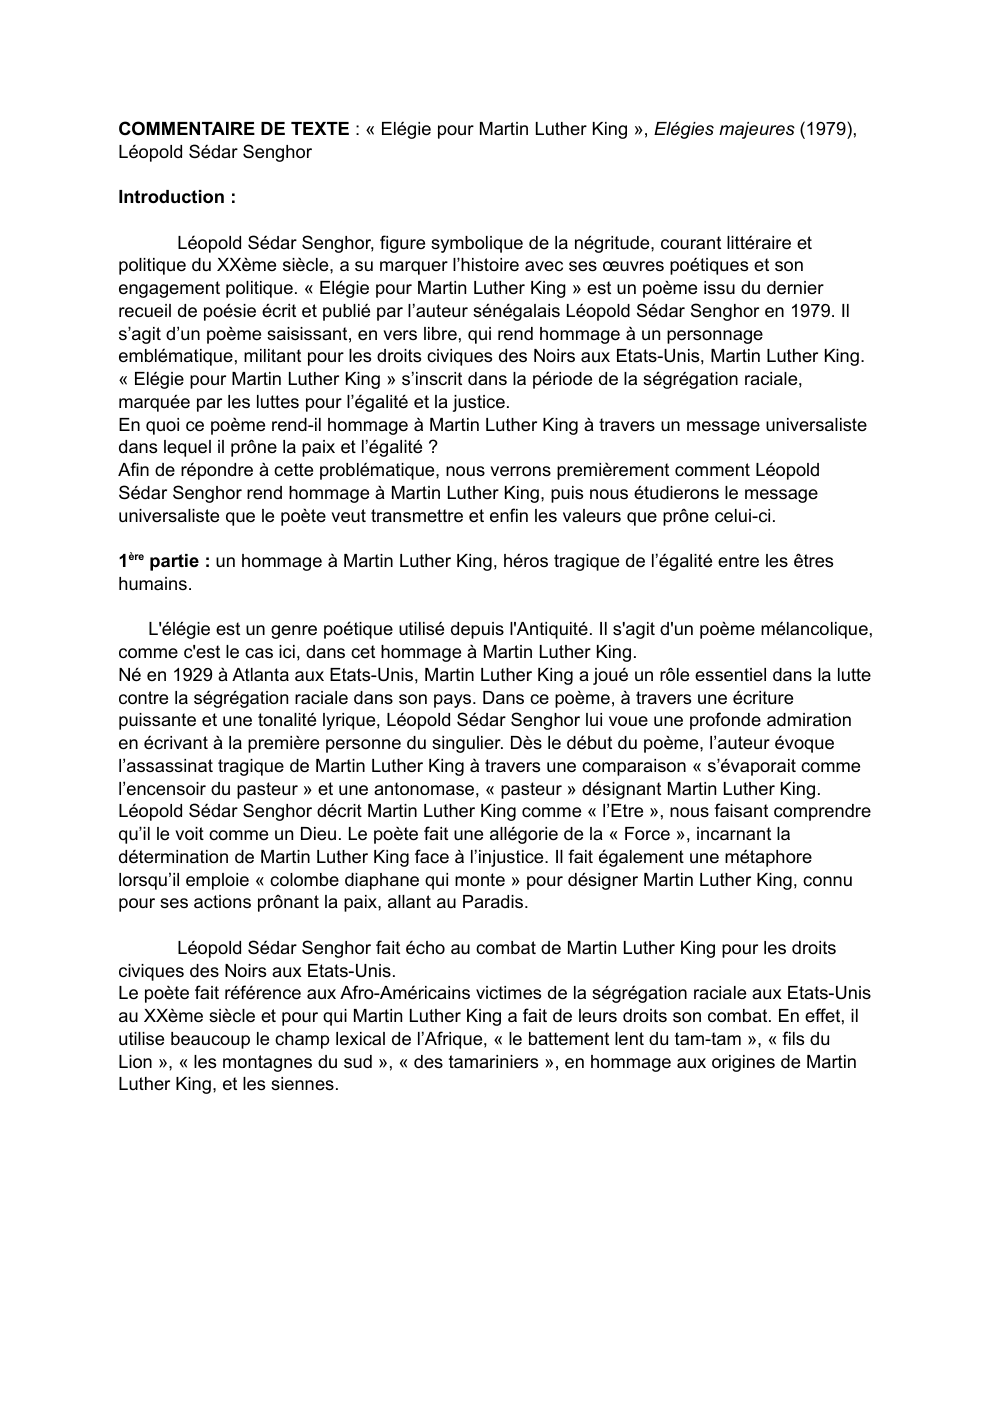 Prévisualisation du document Commentaire de texte "Elegie pour Martin Luther King" de Léopold Sédar Senghor